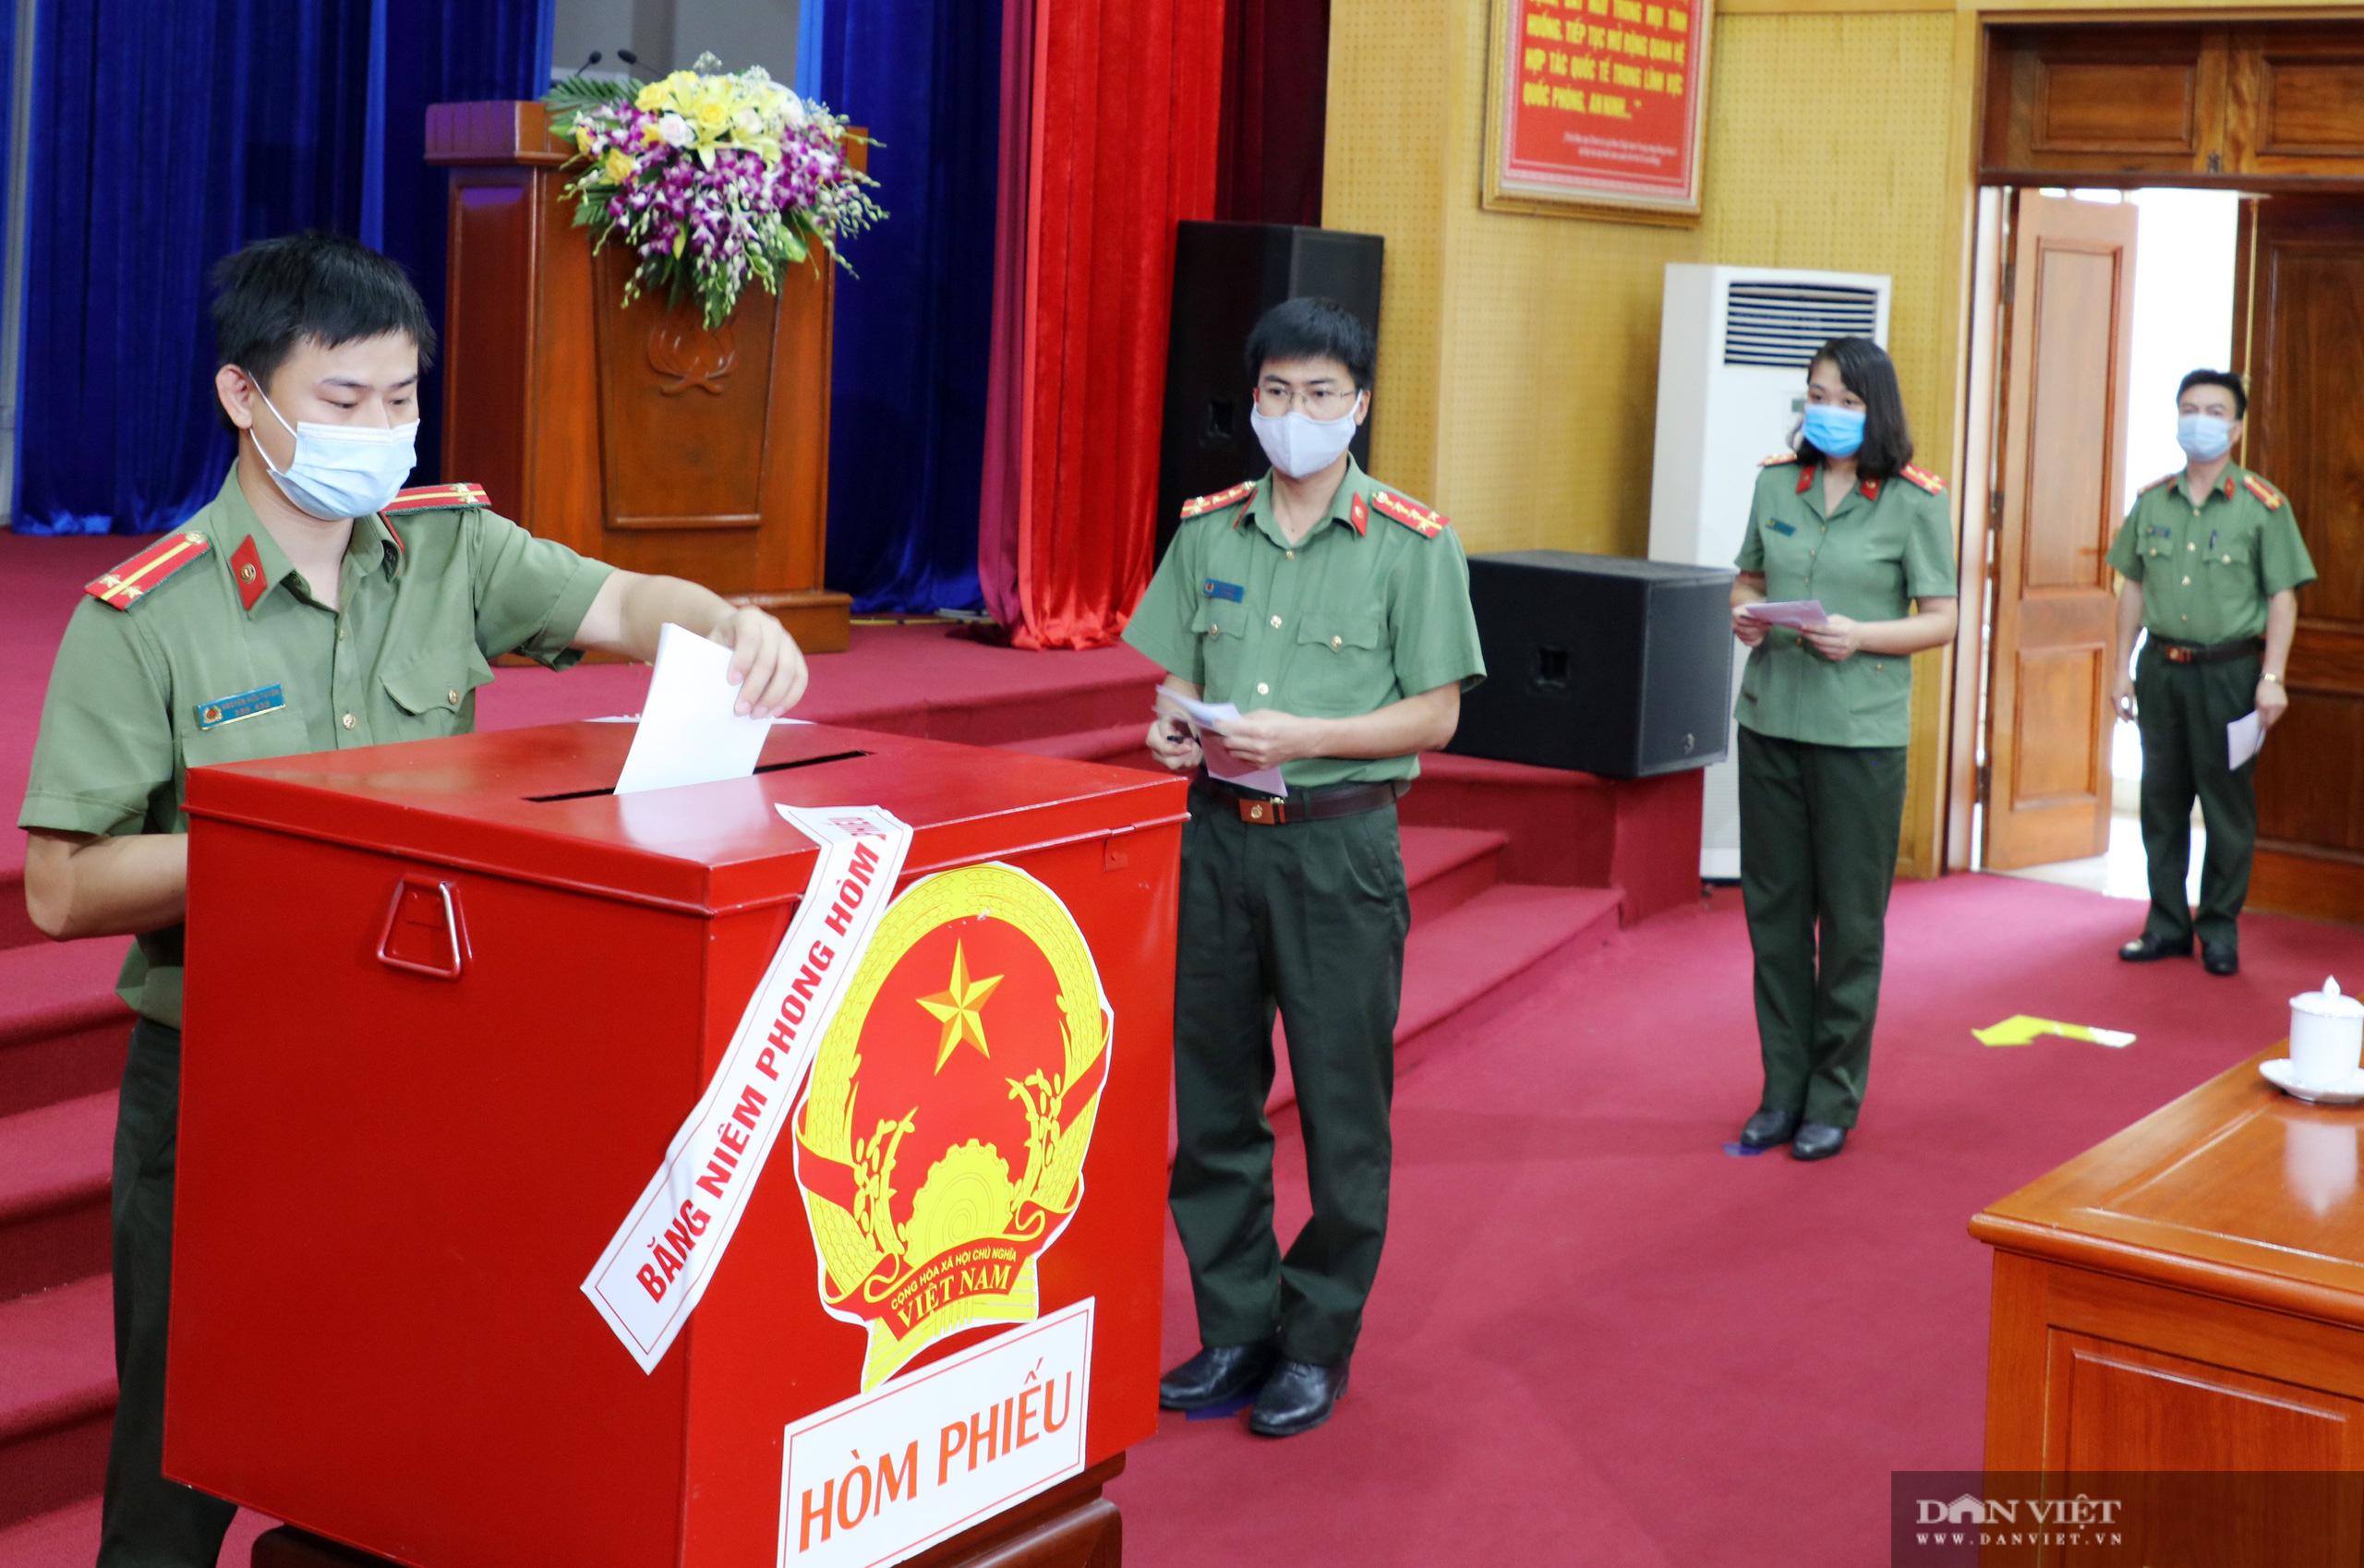 Bắc Ninh: Ngày bầu cử đặc biệt lịch sử trong khu cách ly Covid-19 - Ảnh 11.